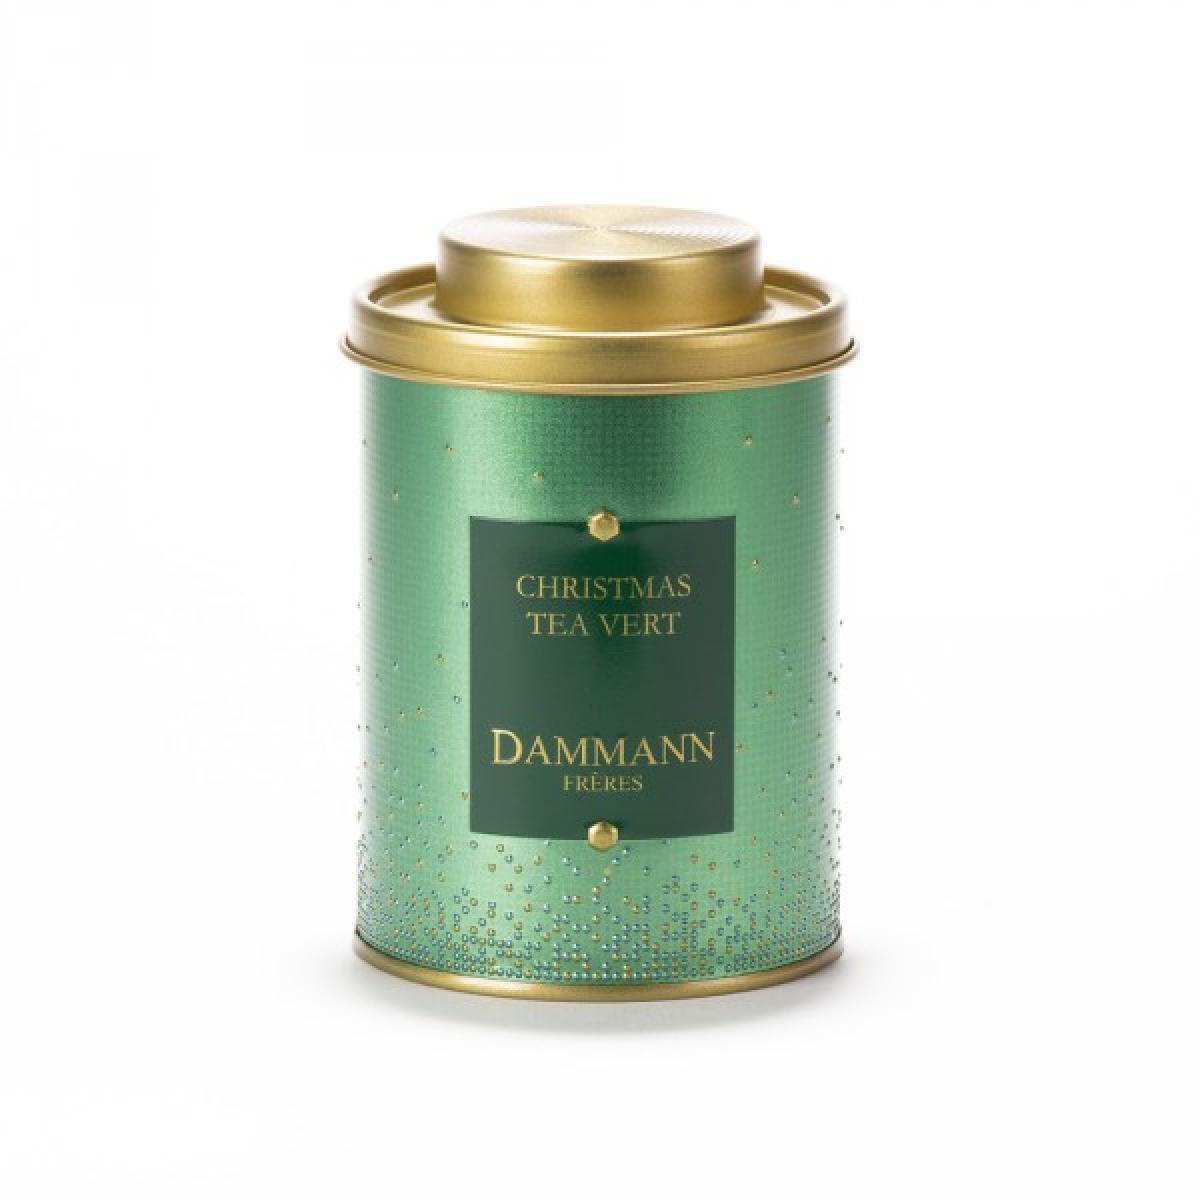 Dammann Frères - Christmas tea vert